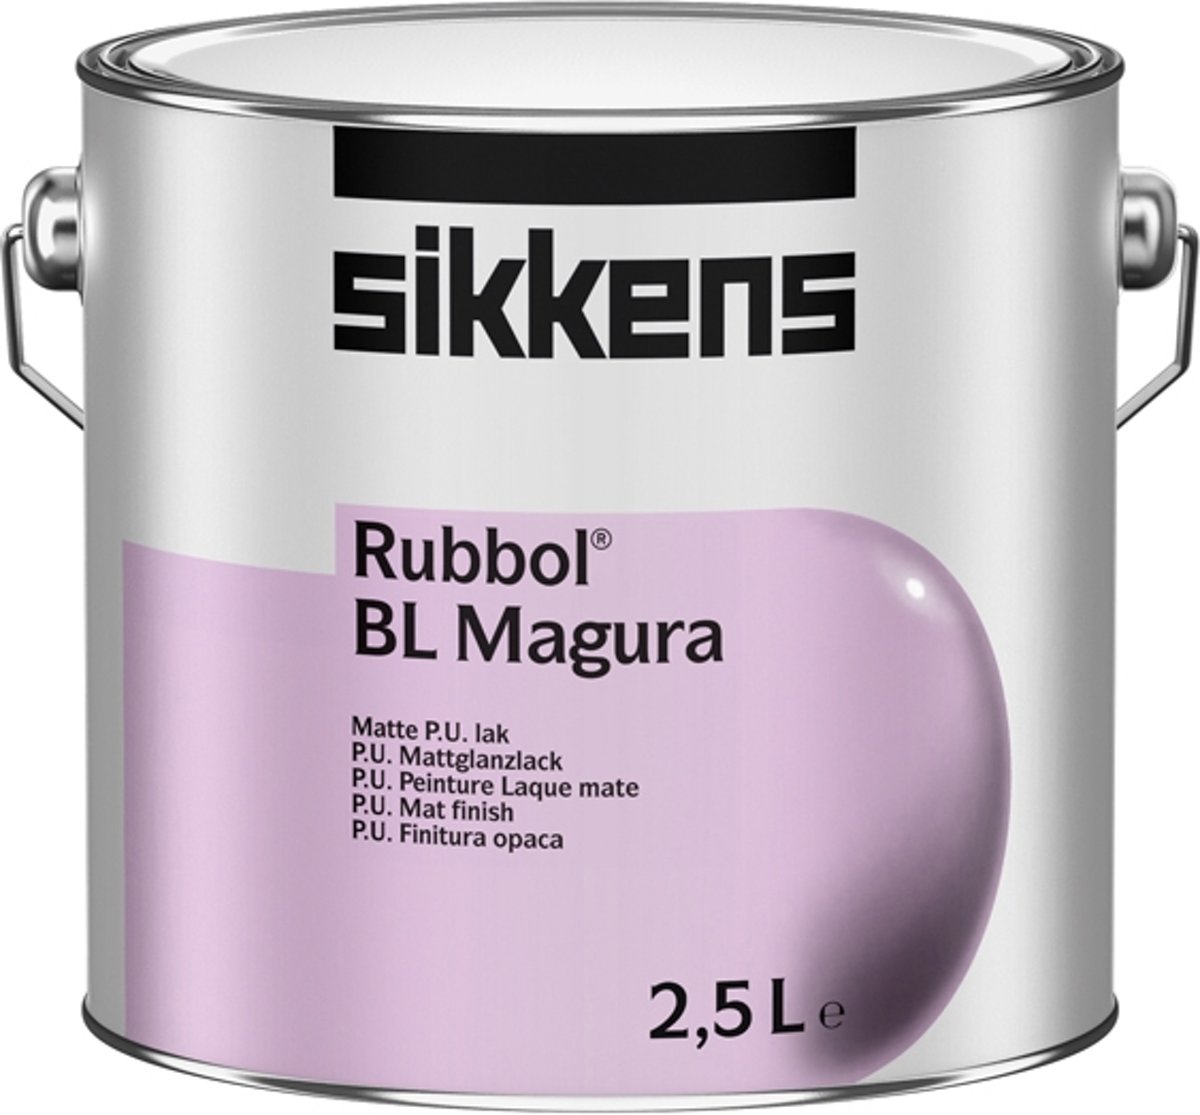 Sikkens Rubbol BL Magura Spiced Honey E4.22.49 2,5 liter